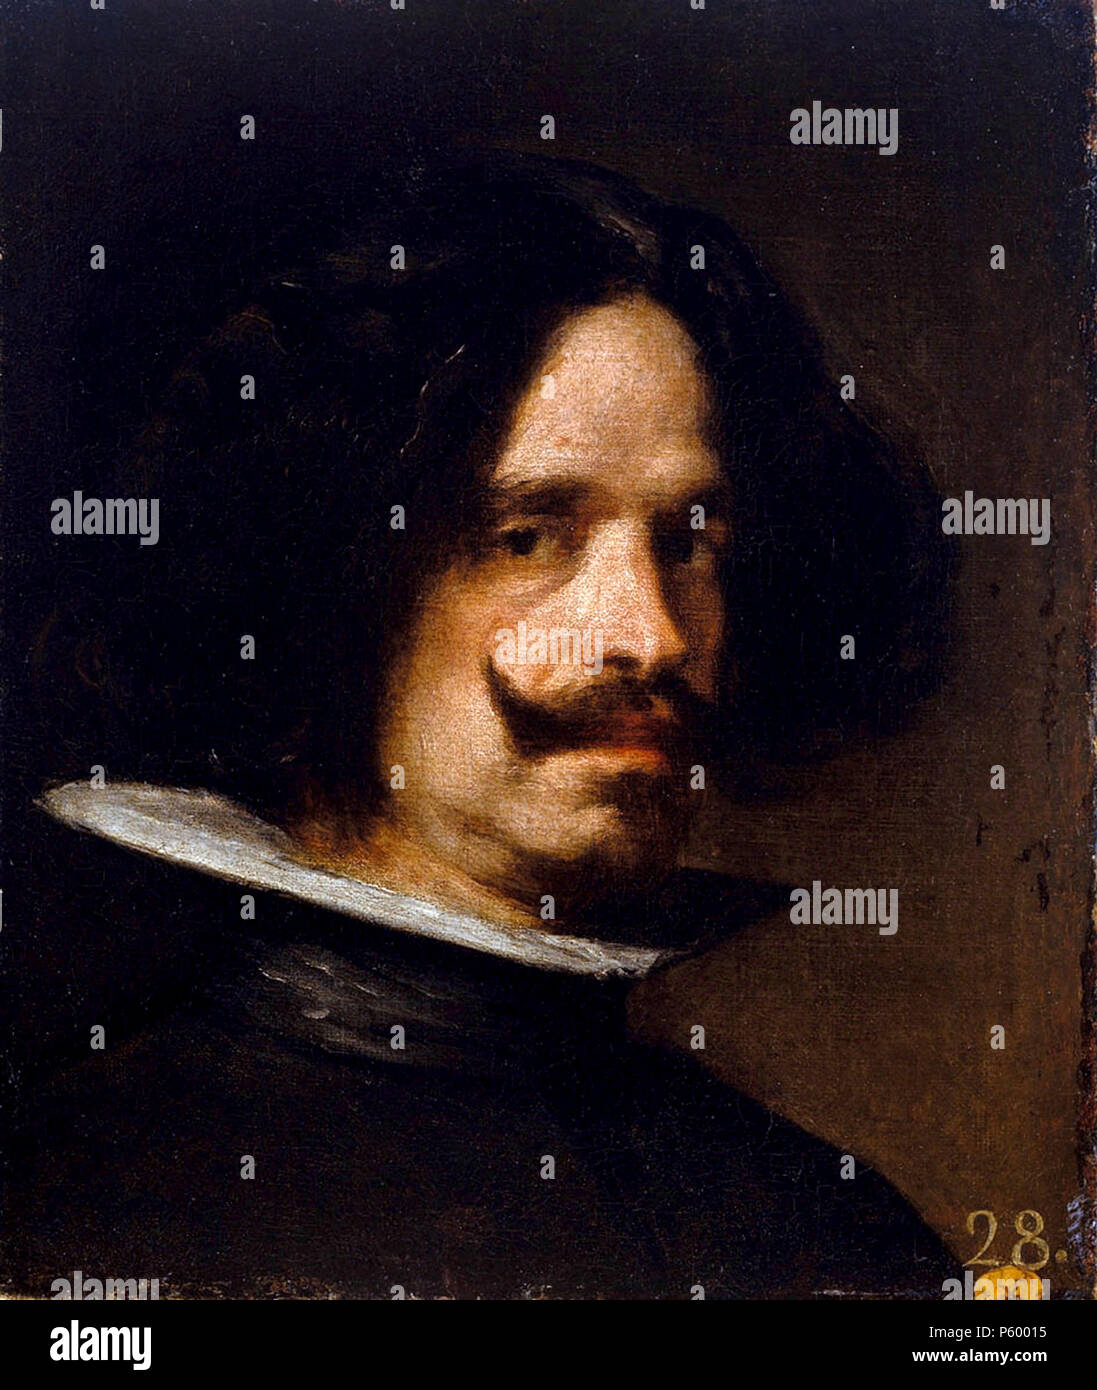 Velázquez, Diego Velázquez, Diego Rodríguez de Silva y Velázquez (1599 - 1660) pintor español Foto de stock